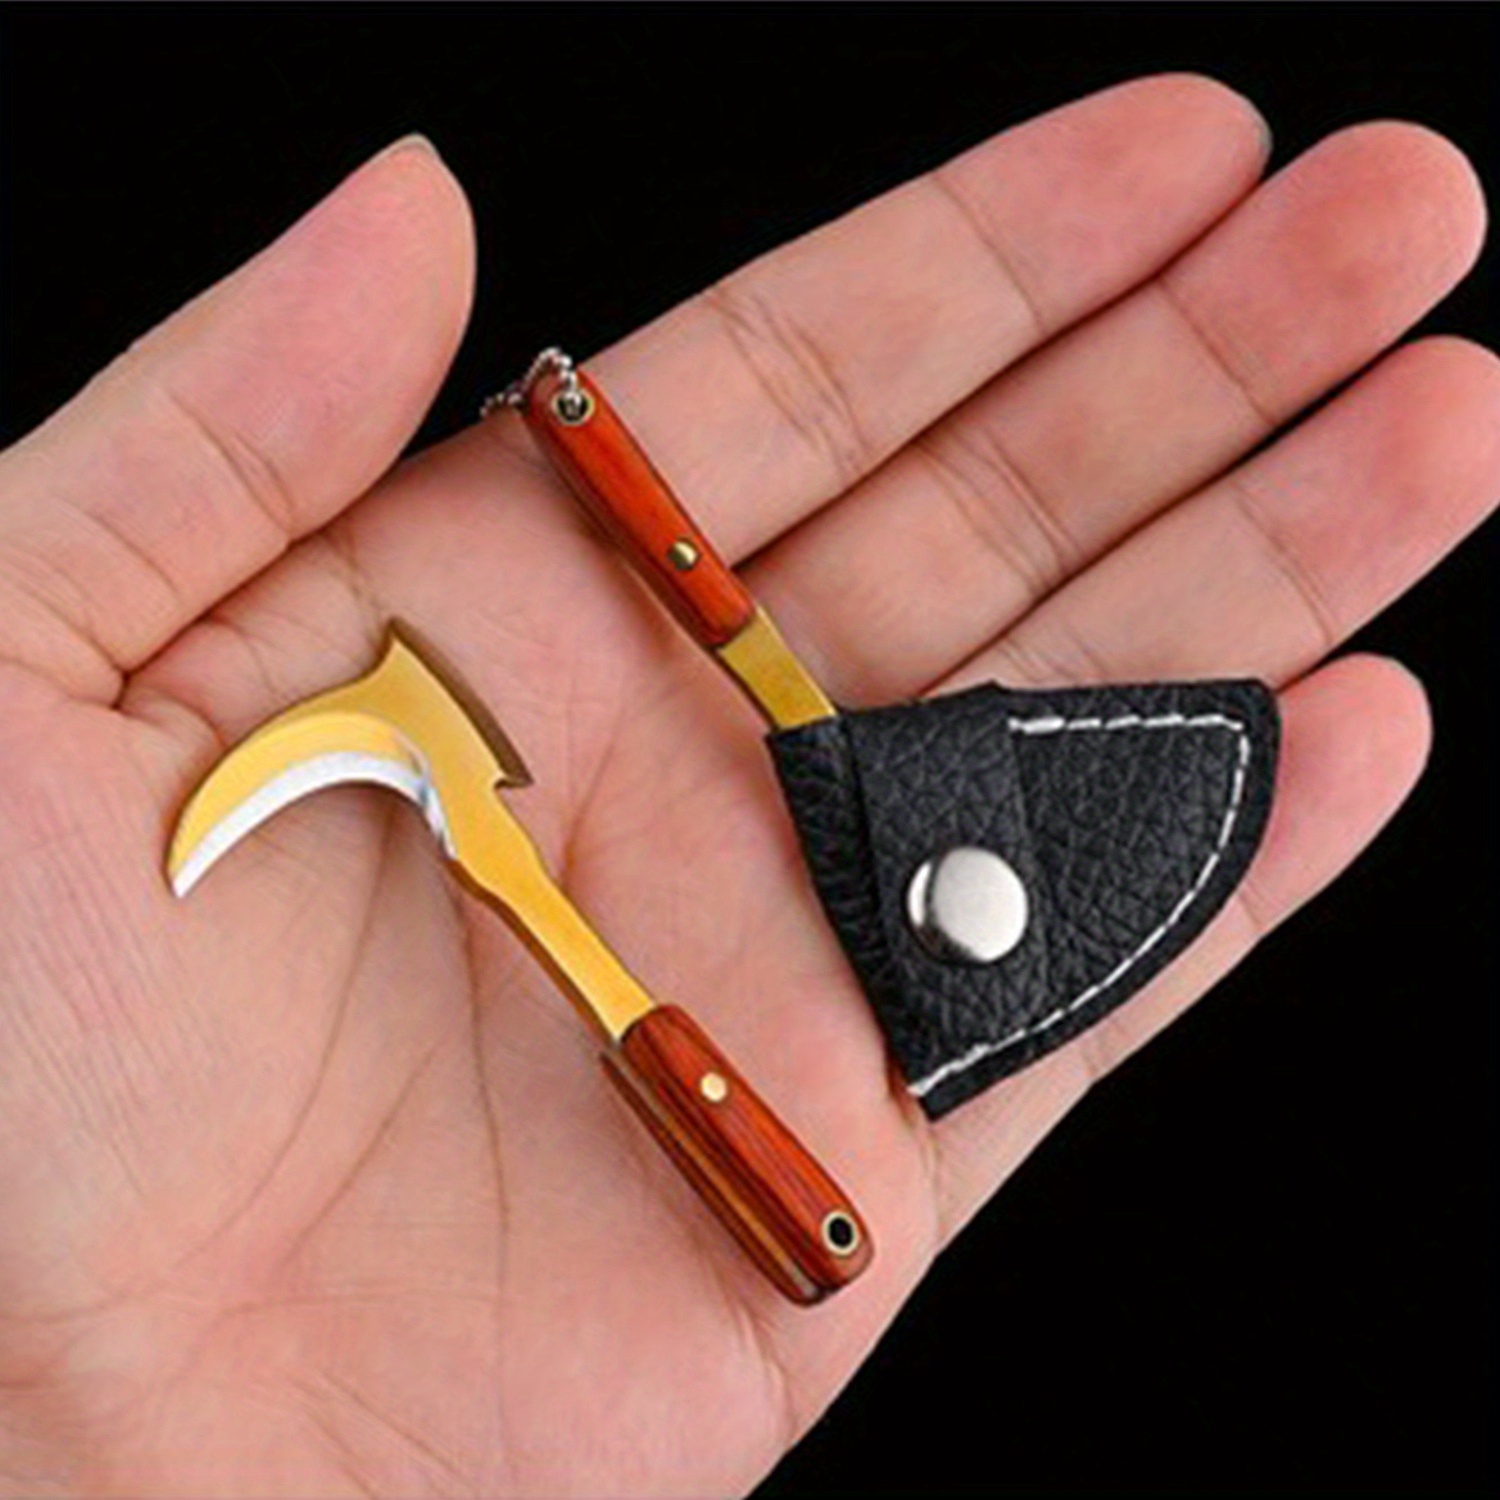 Sickle Bag Set Keychain For Men: Mini Sickle Knife Set For Edc